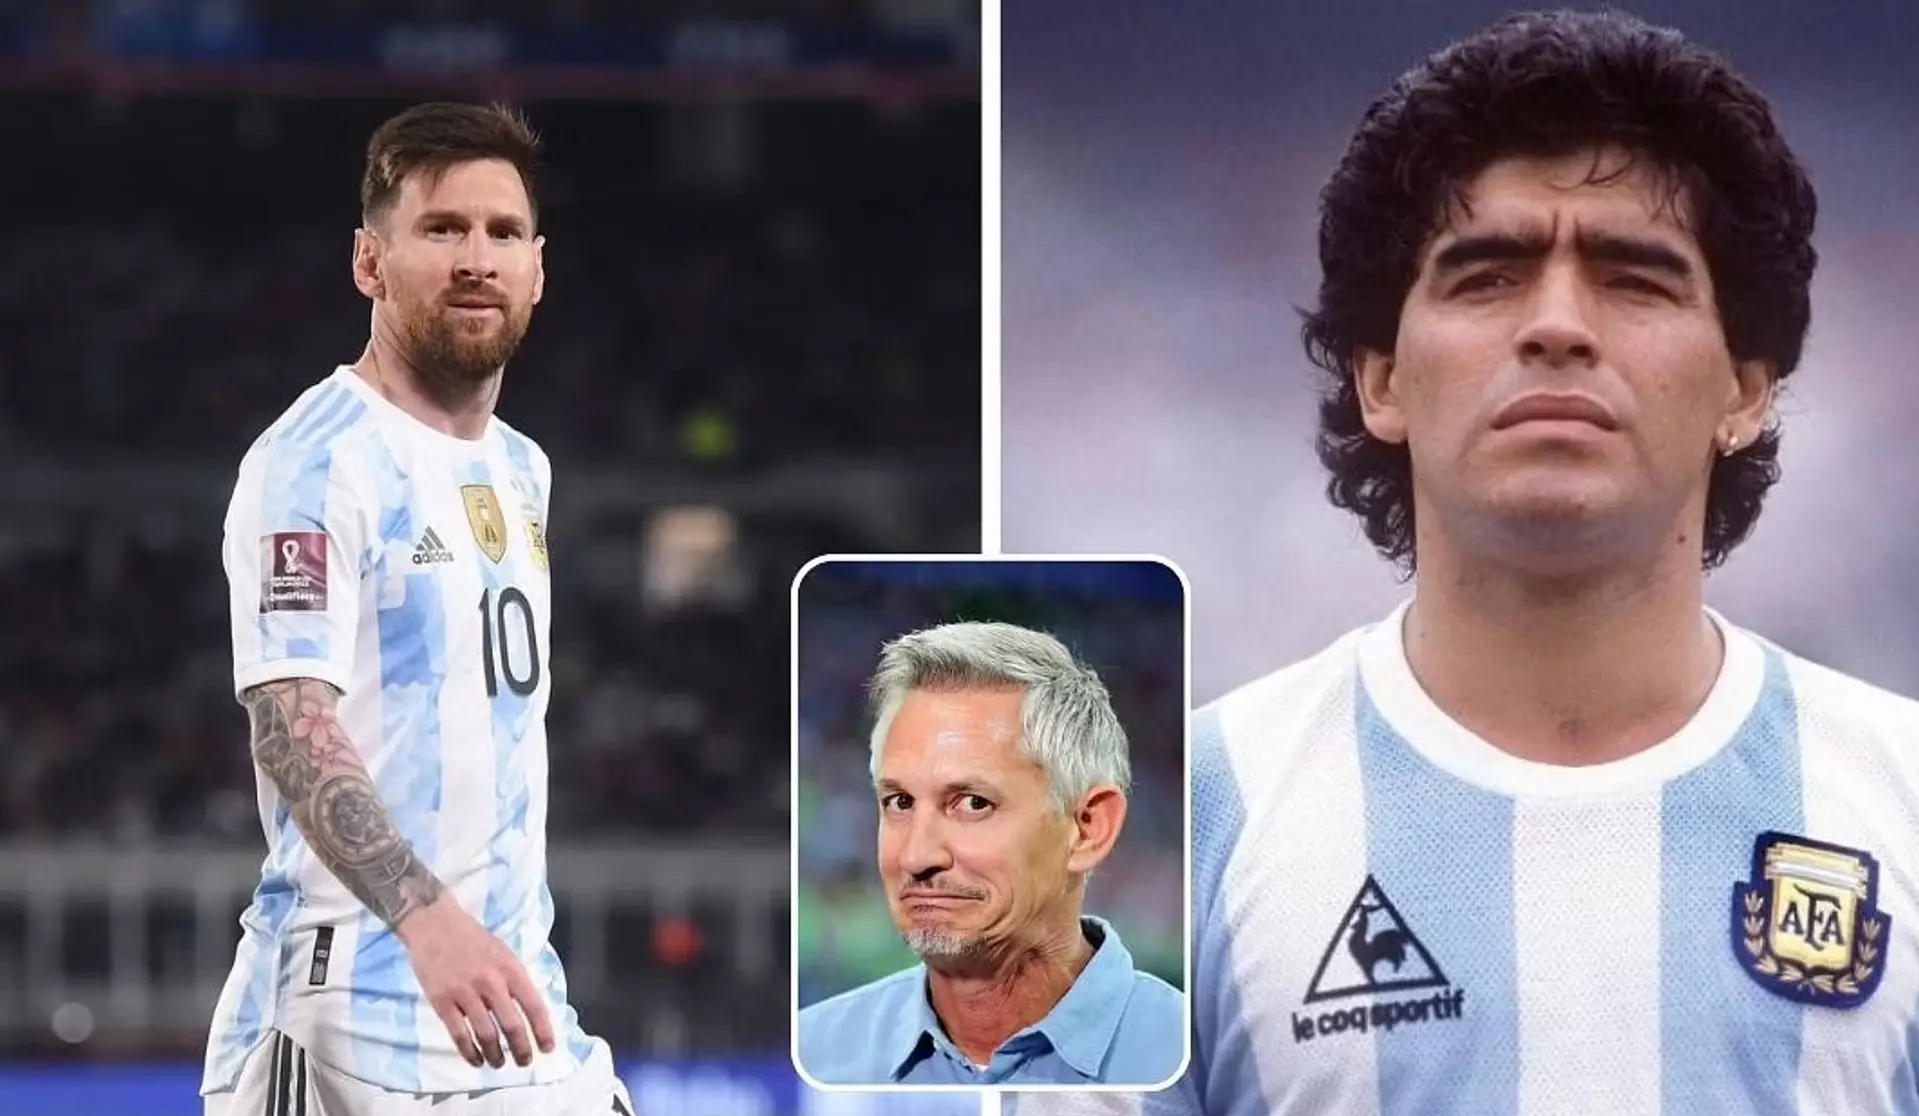 "Selbst der beste Spieler der Geschichte braucht ein Team": Gary Lineker vergleicht Messi und Maradona